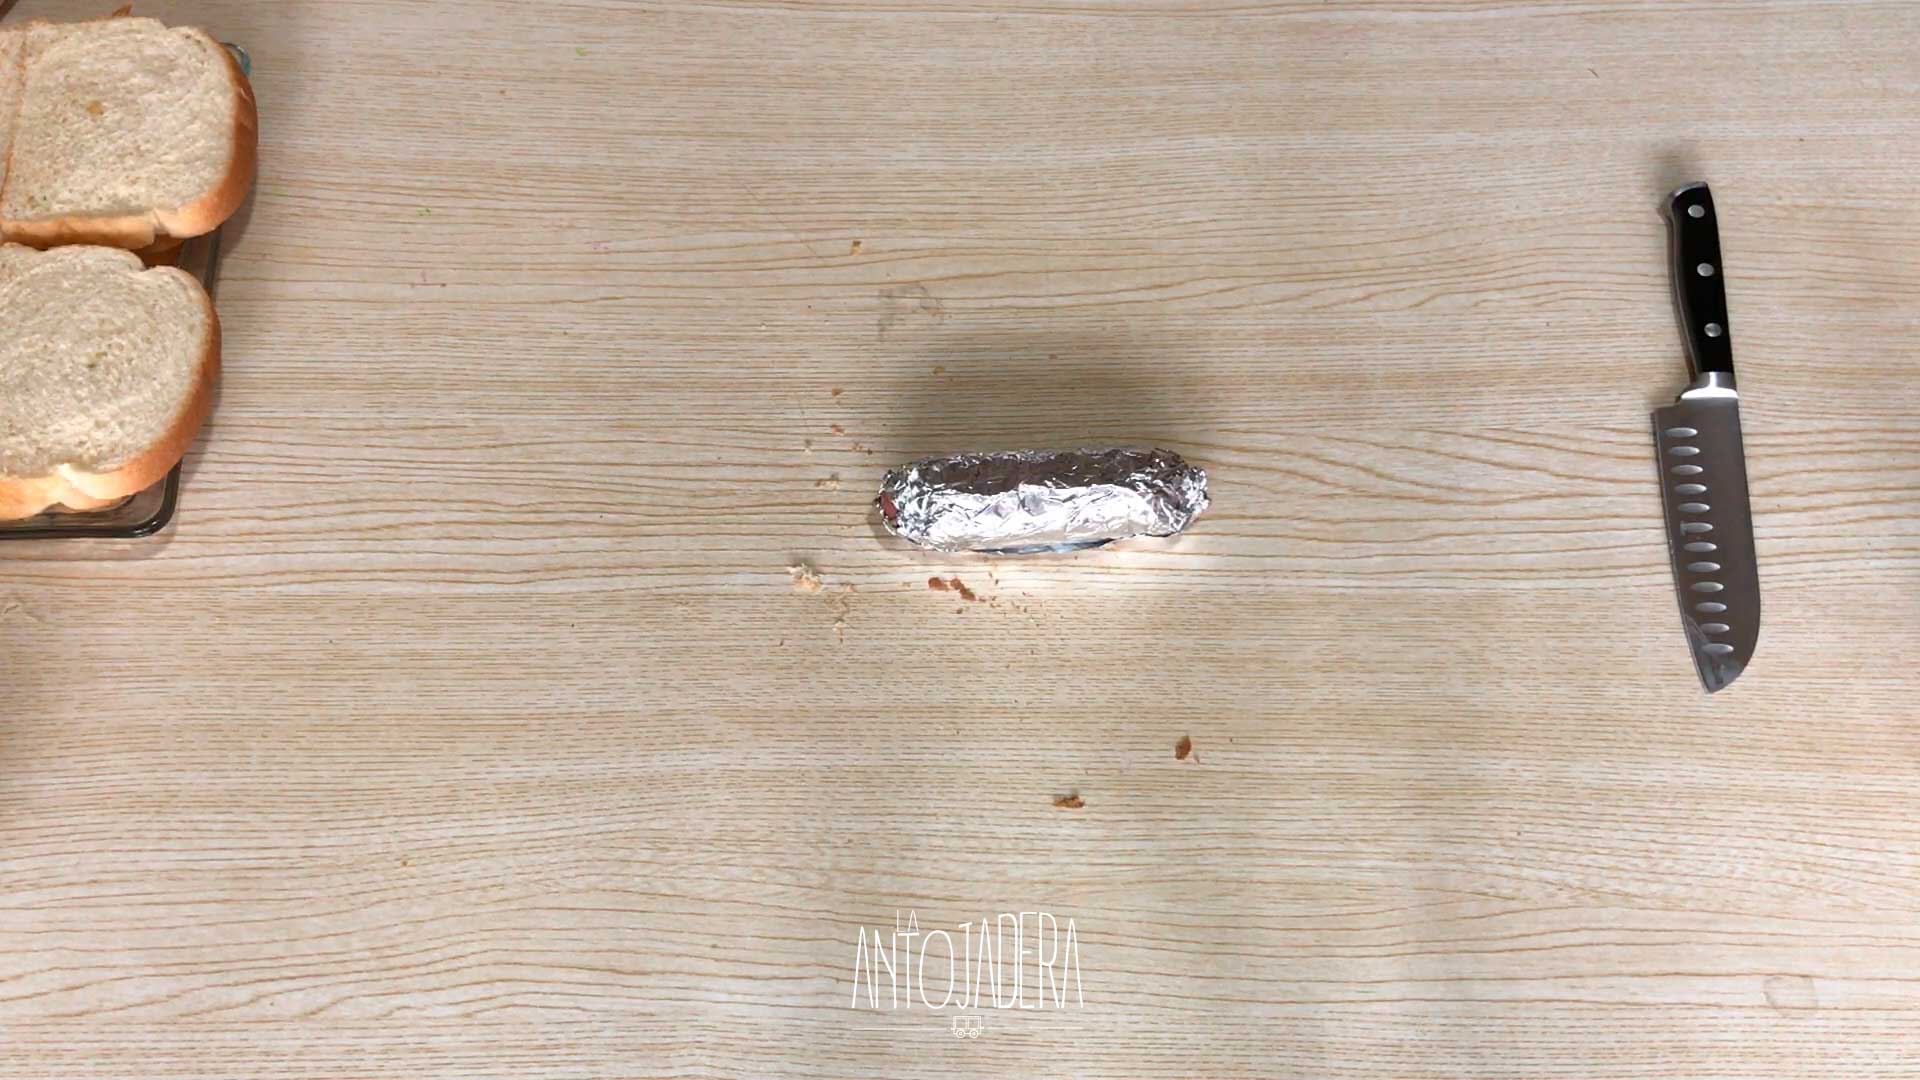 La Antojadera | Hot Dog Frito